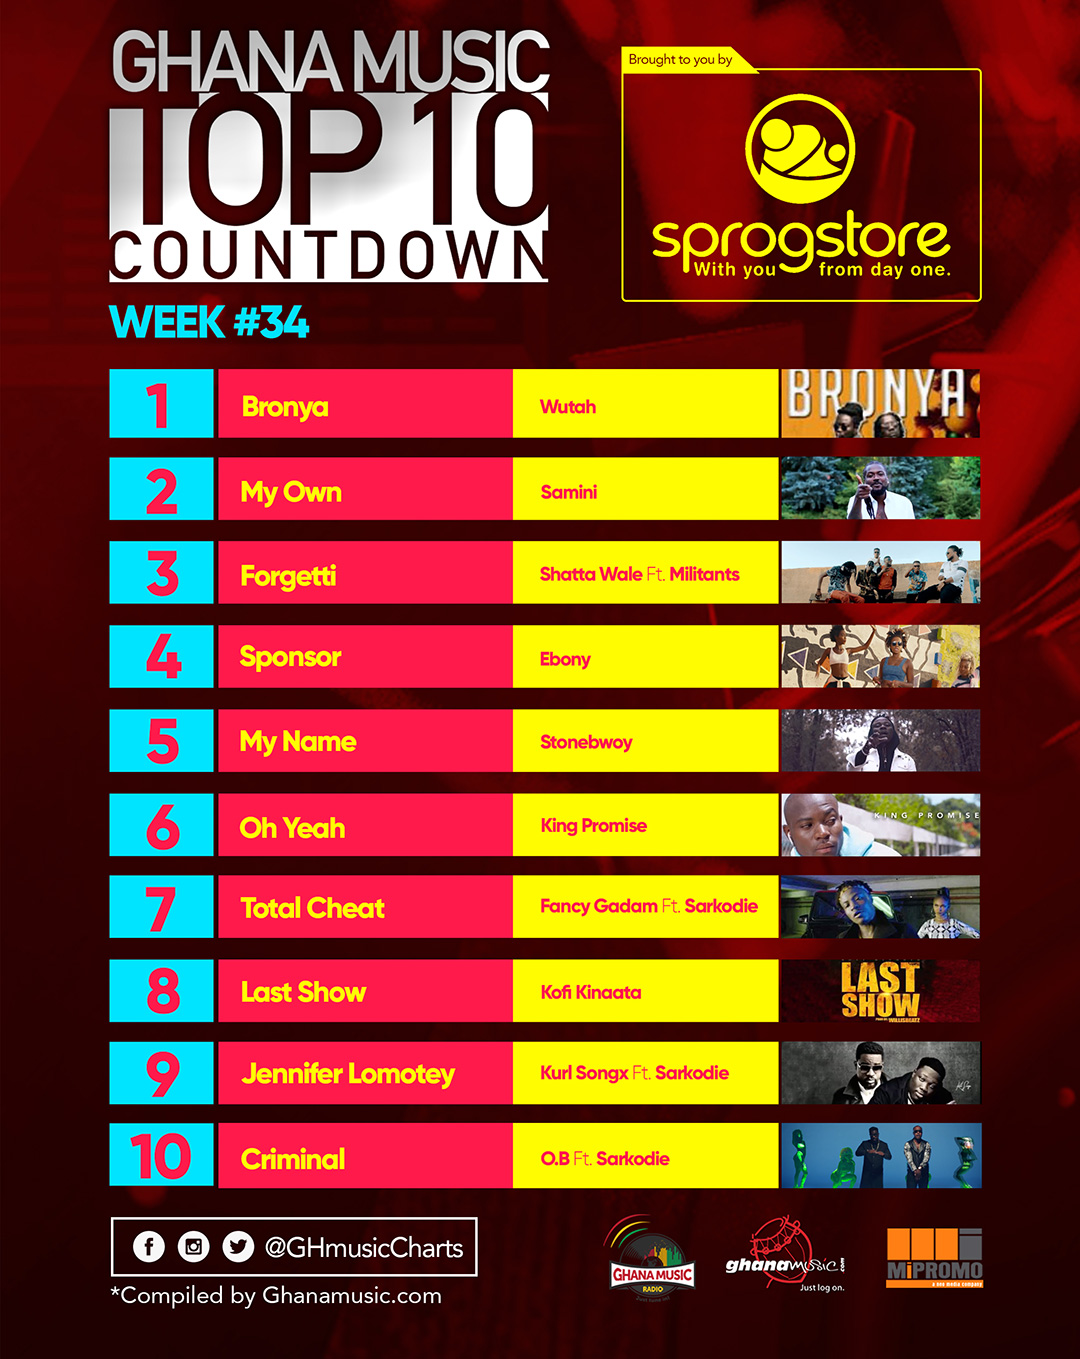 Week #34: Week ending Saturday, August 26th, 2017. Ghana Music Top 10 Countdown.